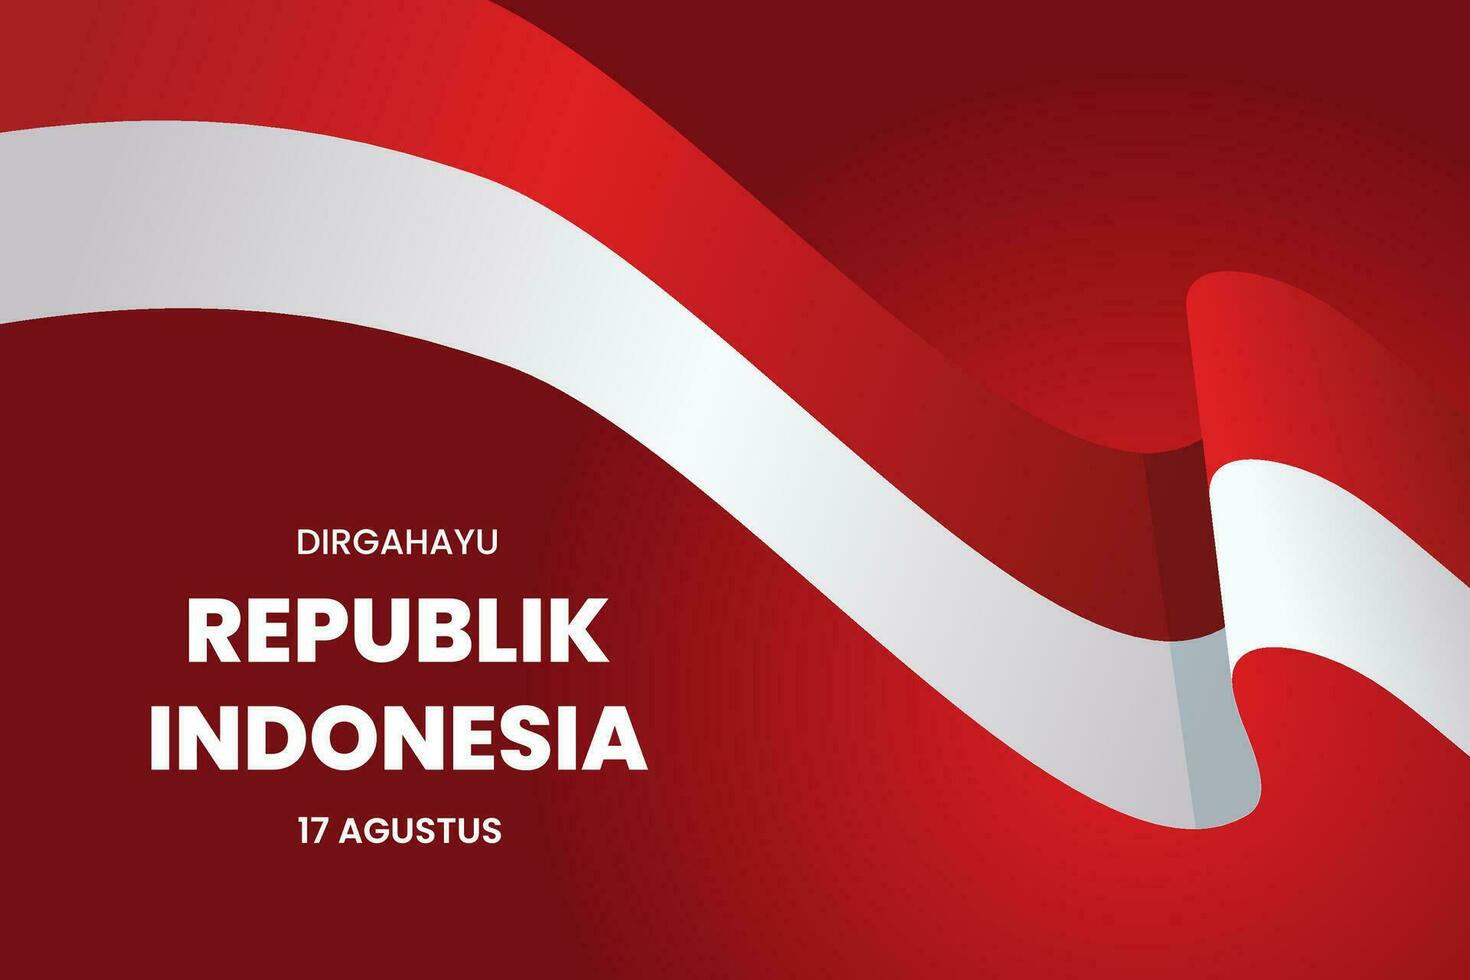 gelukkig Indonesisch onafhankelijkheid dag, dirgahayu republik Indonesië, 17 augustus 1945. betekenis lang leven Indonesië, vector illustratie.